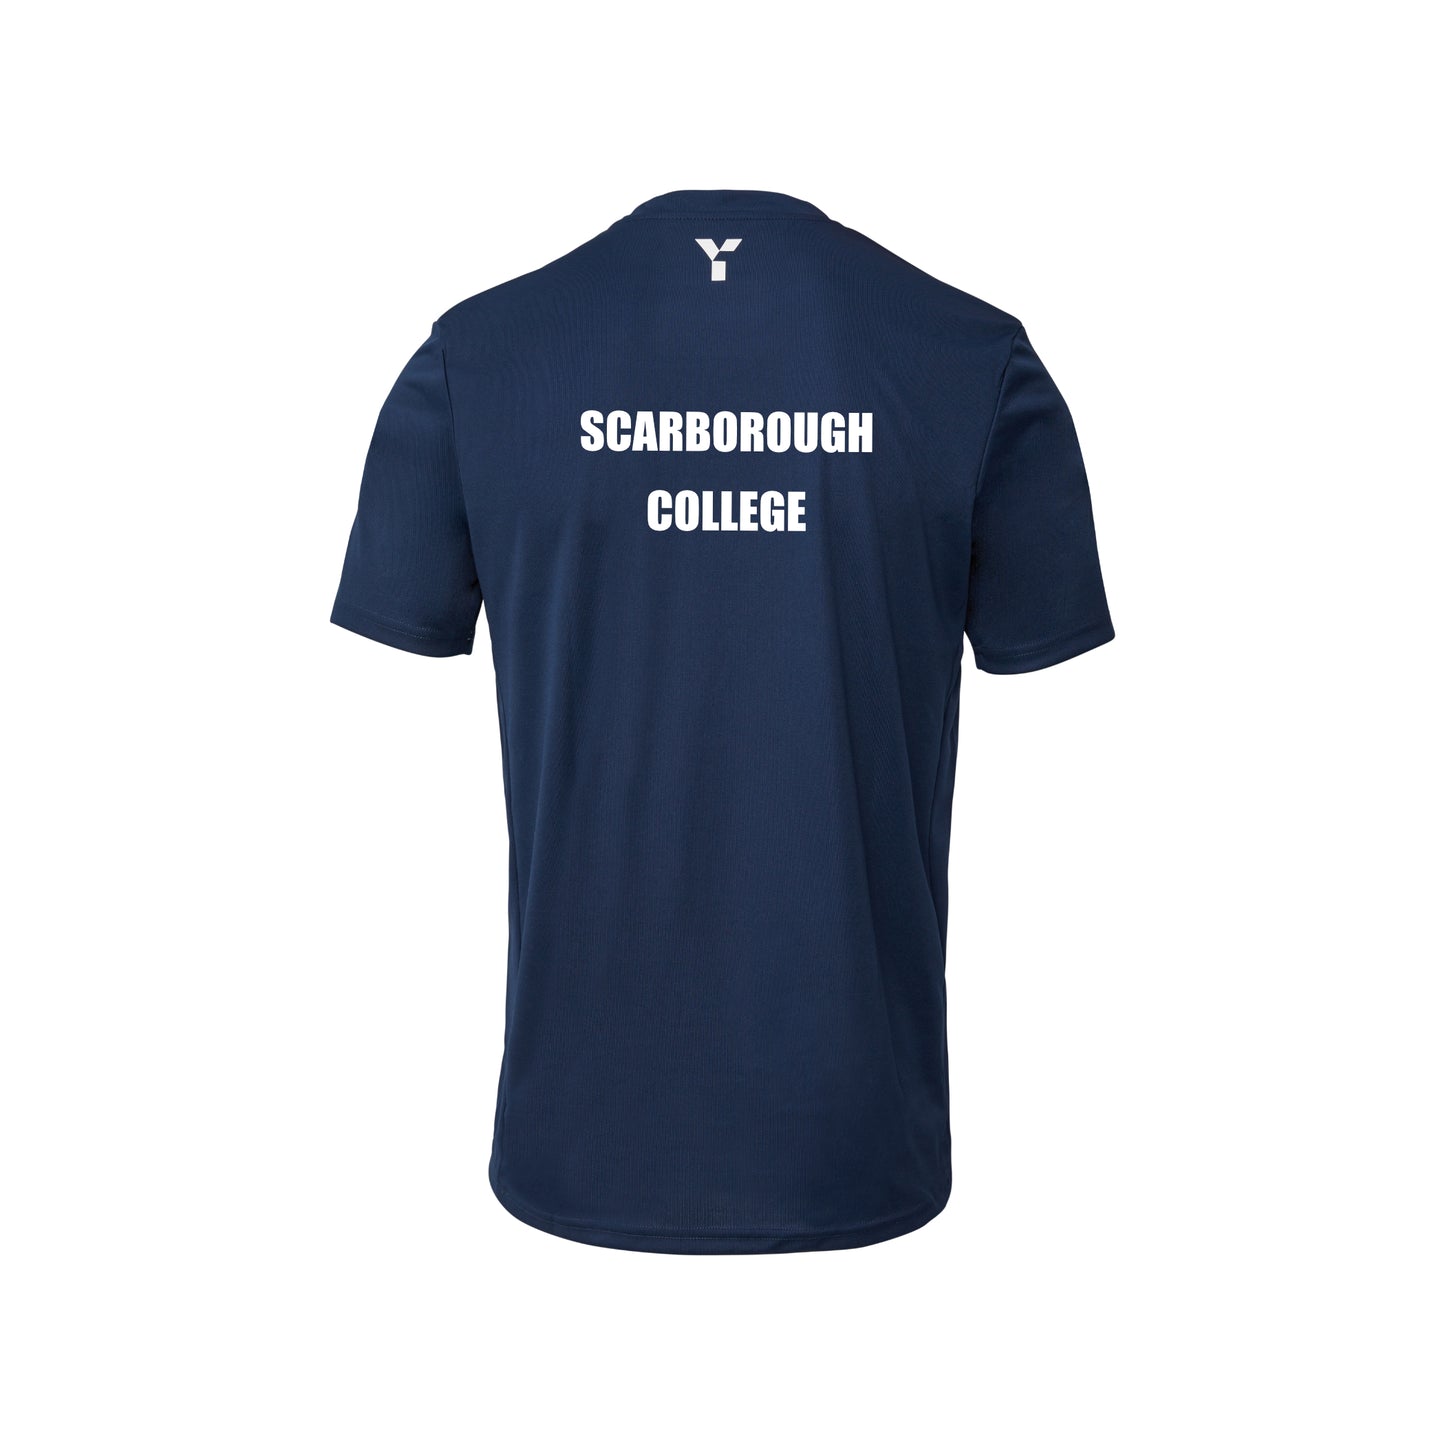 Scarborough College - Junior Short Sleeve Training Top Unisex Navy